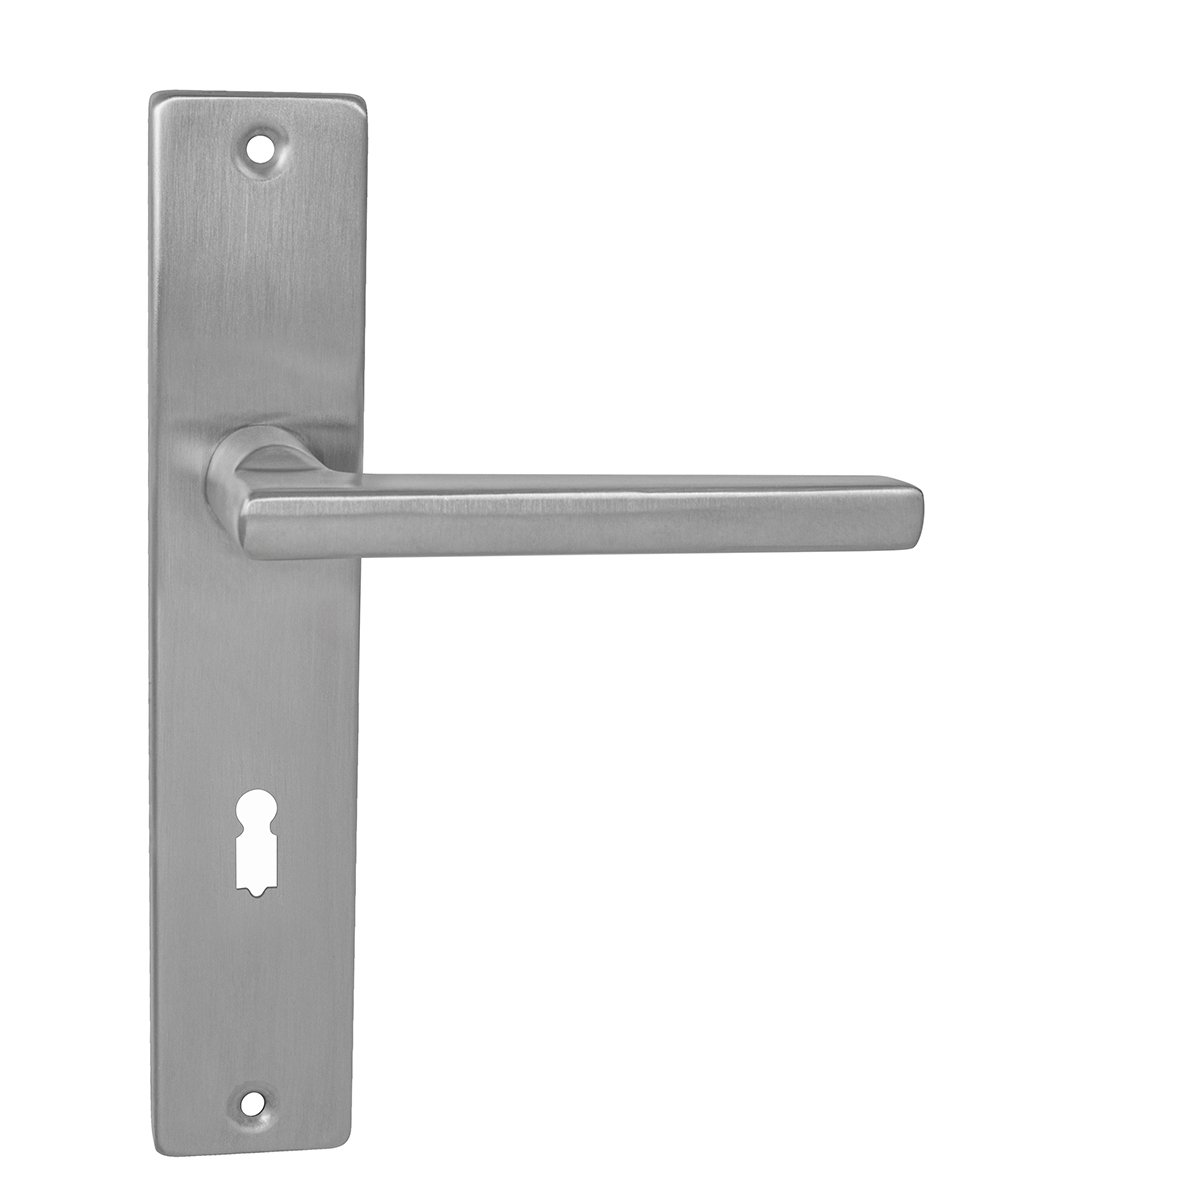 MP - DANIELA - SH WC kľúč, 72 mm, kľučka/kľučka